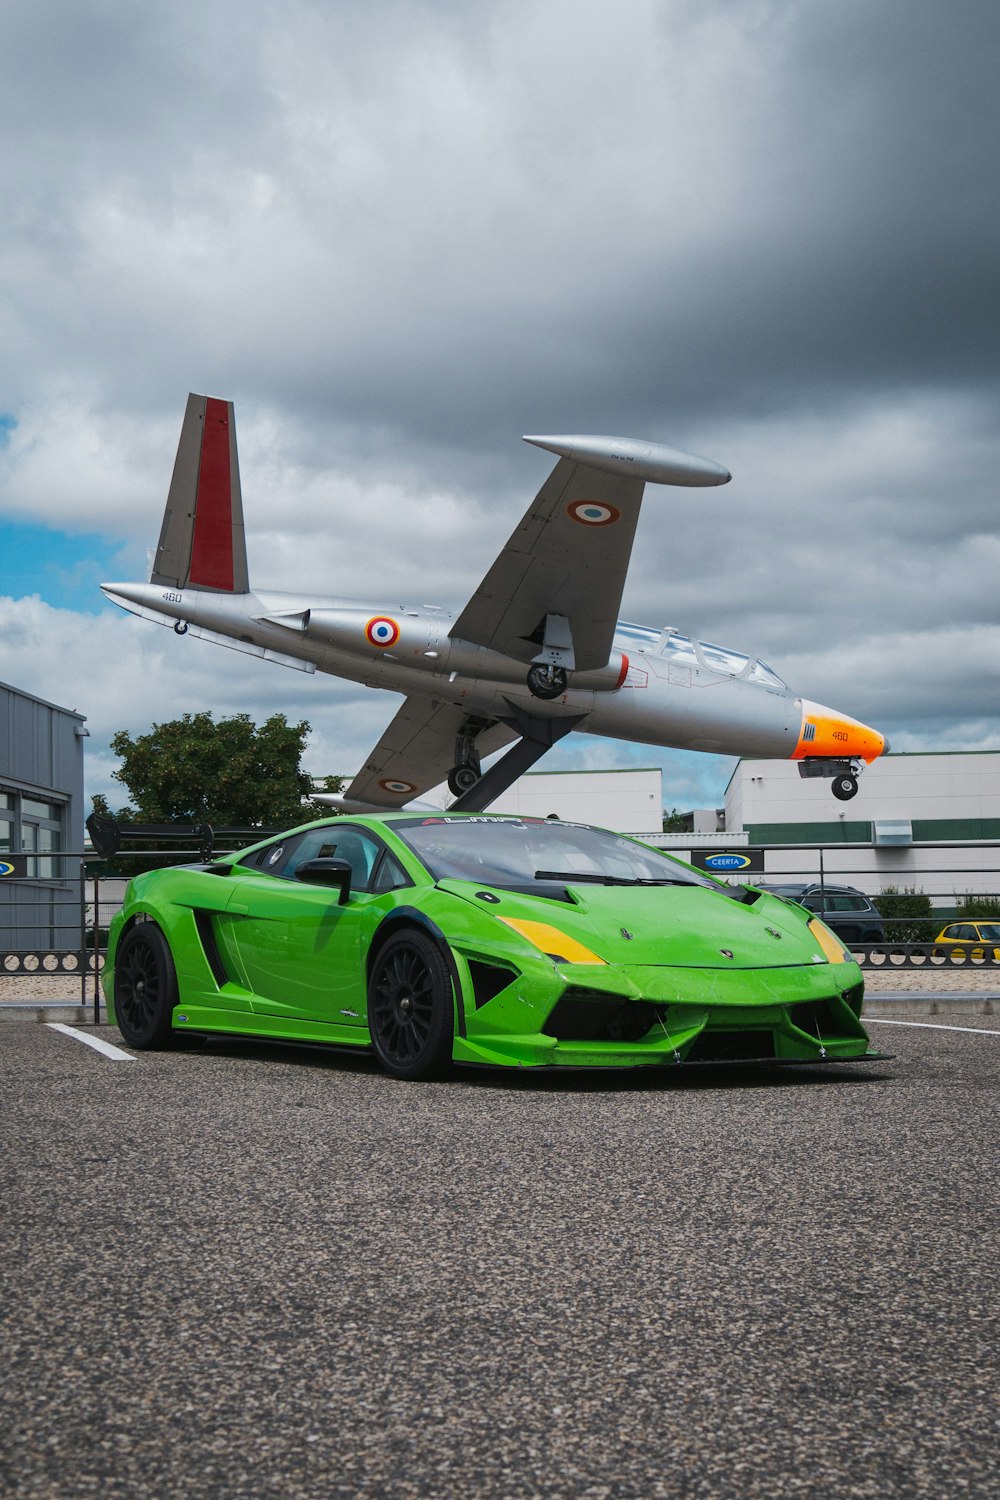 Grüner Ferrari-Sportwagen tagsüber unterwegs